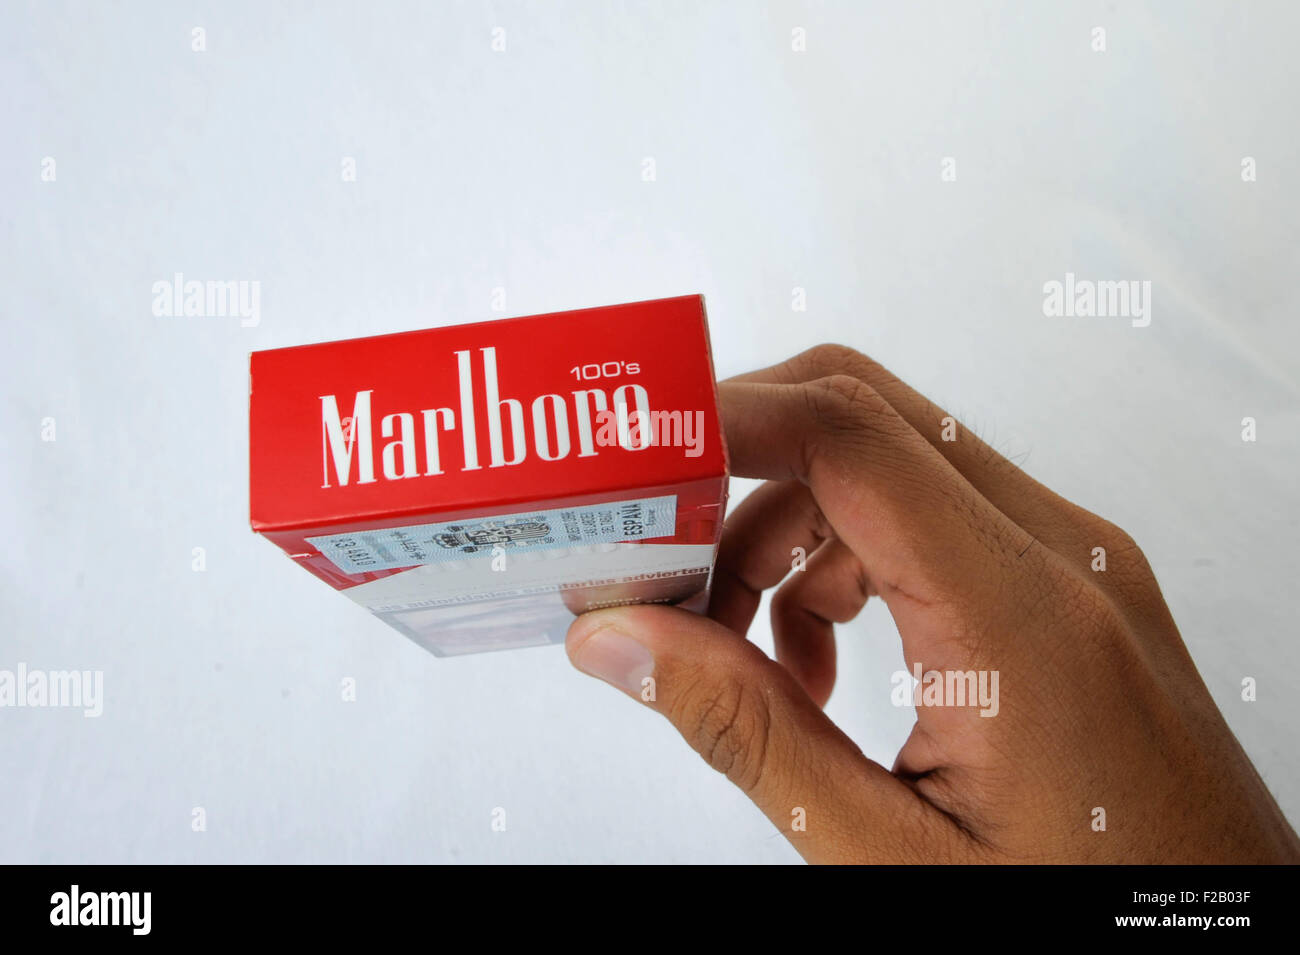 Los cigarrillos de Marlboro Marlboro cigarrillo Foto de stock